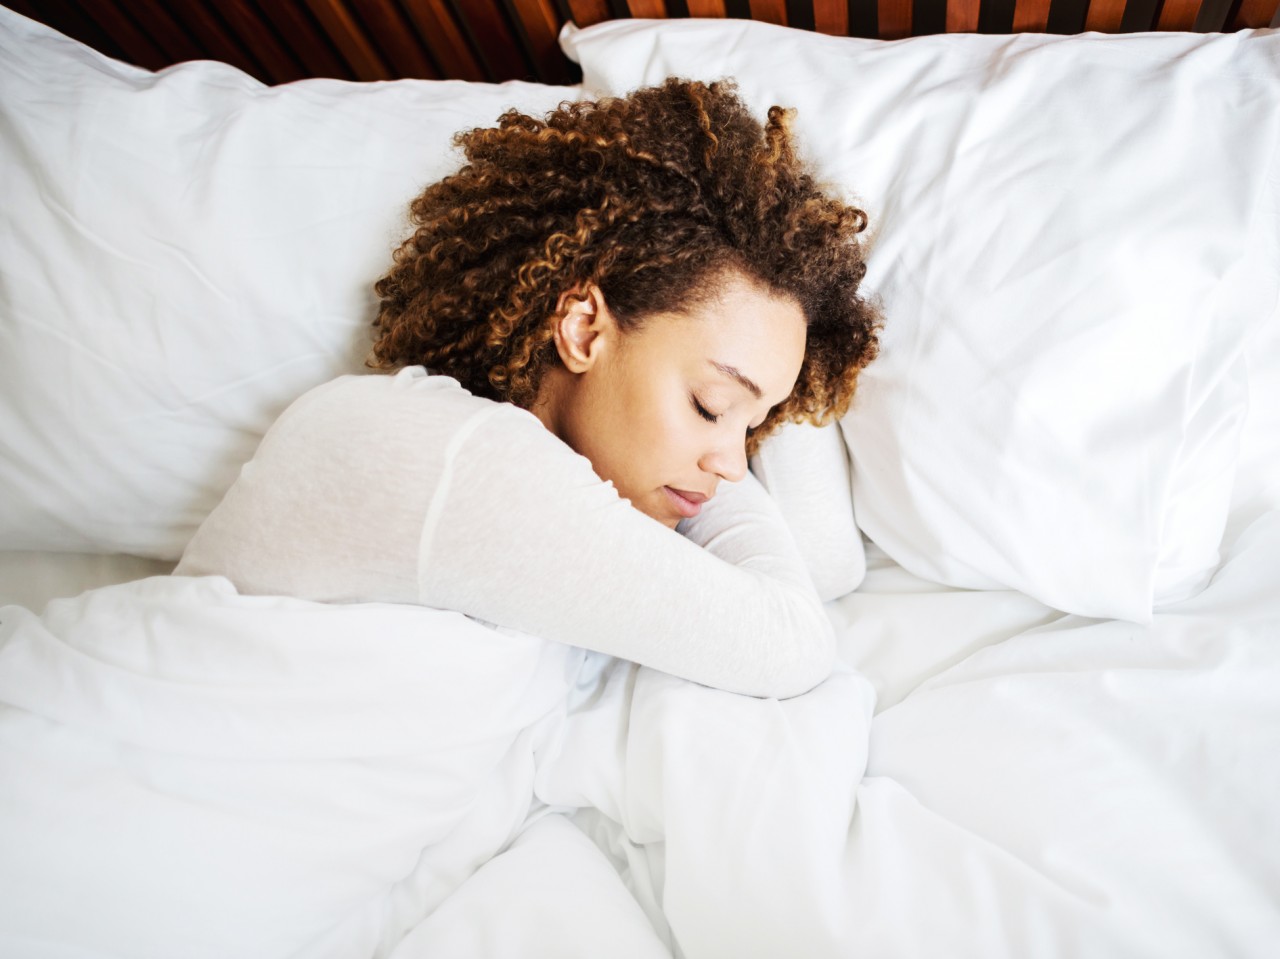 Uykusuzluk Nasıl Giderilir? Uyku Nasıl Gelir? Daha İyi Uyku İçin Doğal Takviyeler